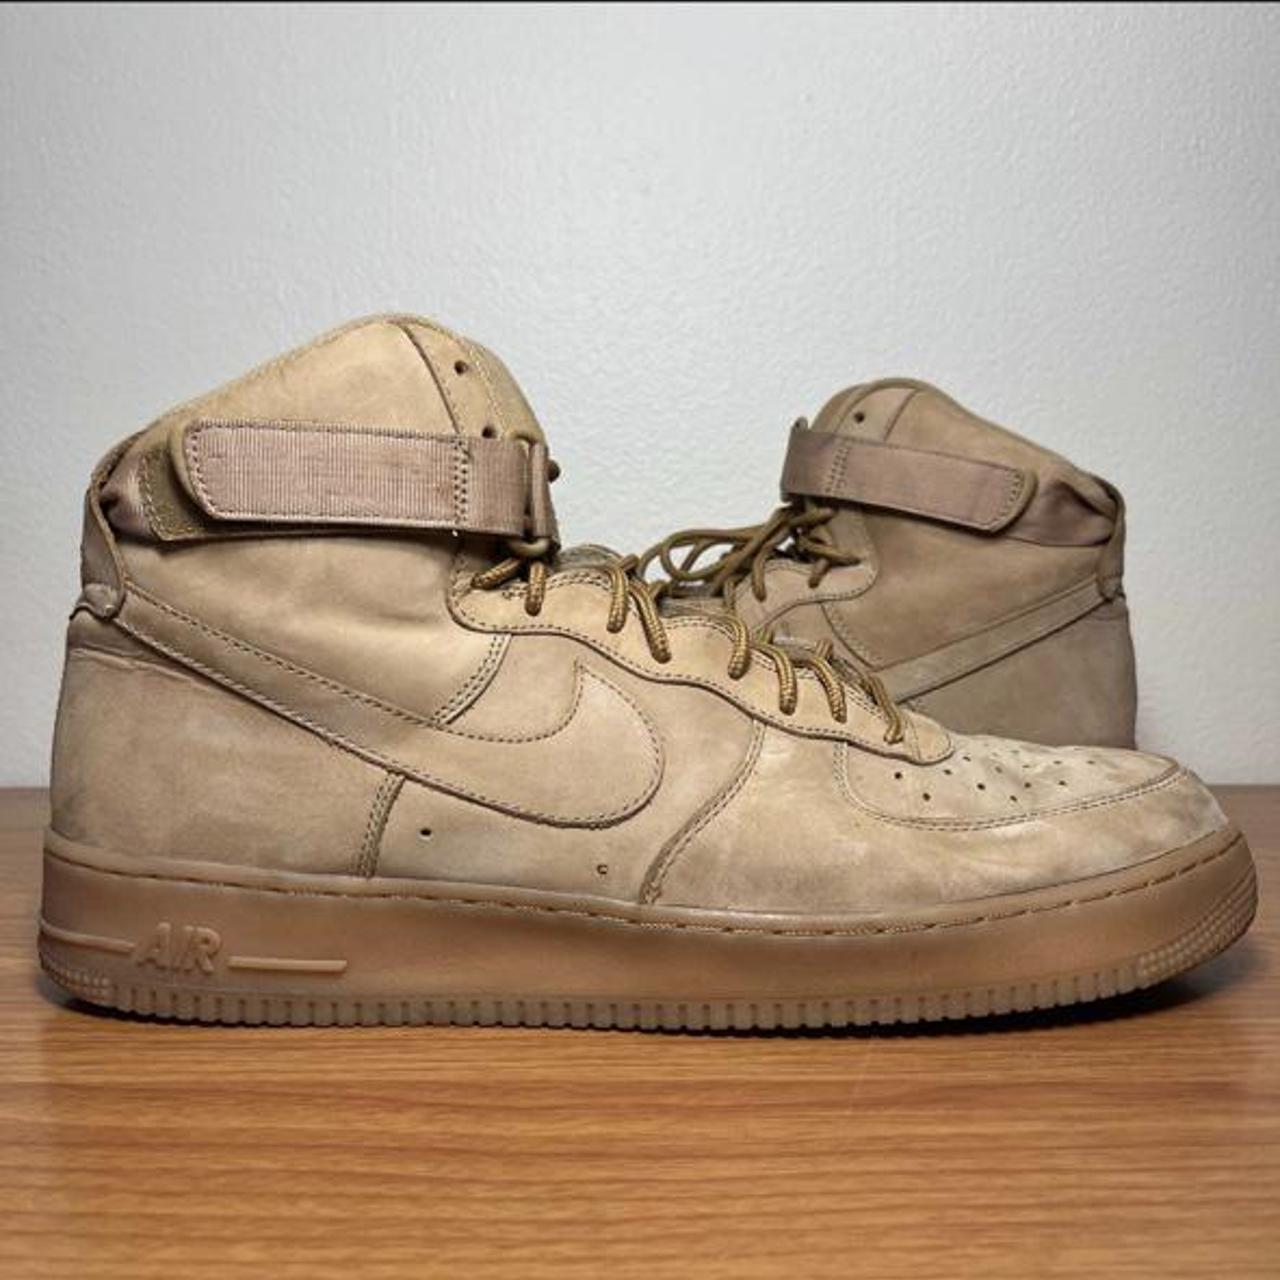 Nike Air Force 1 High ‘07 LV8 WB Wheat Flax Brown... - Depop